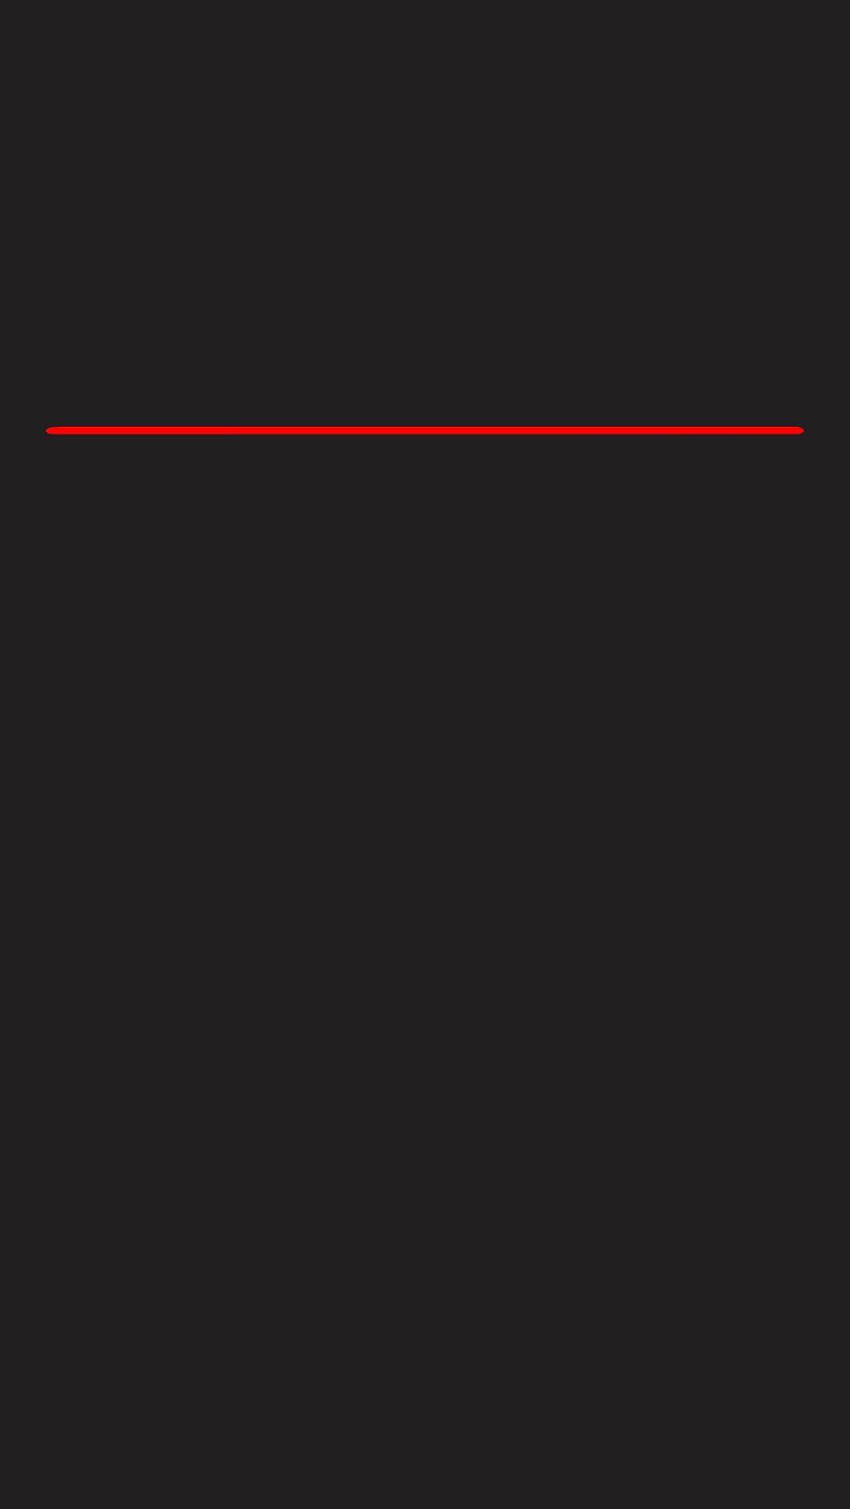 Schermata di blocco dell'iPhone 6 Plus. Minimal grigio scuro con linea rossa, linea Sfondo del telefono HD